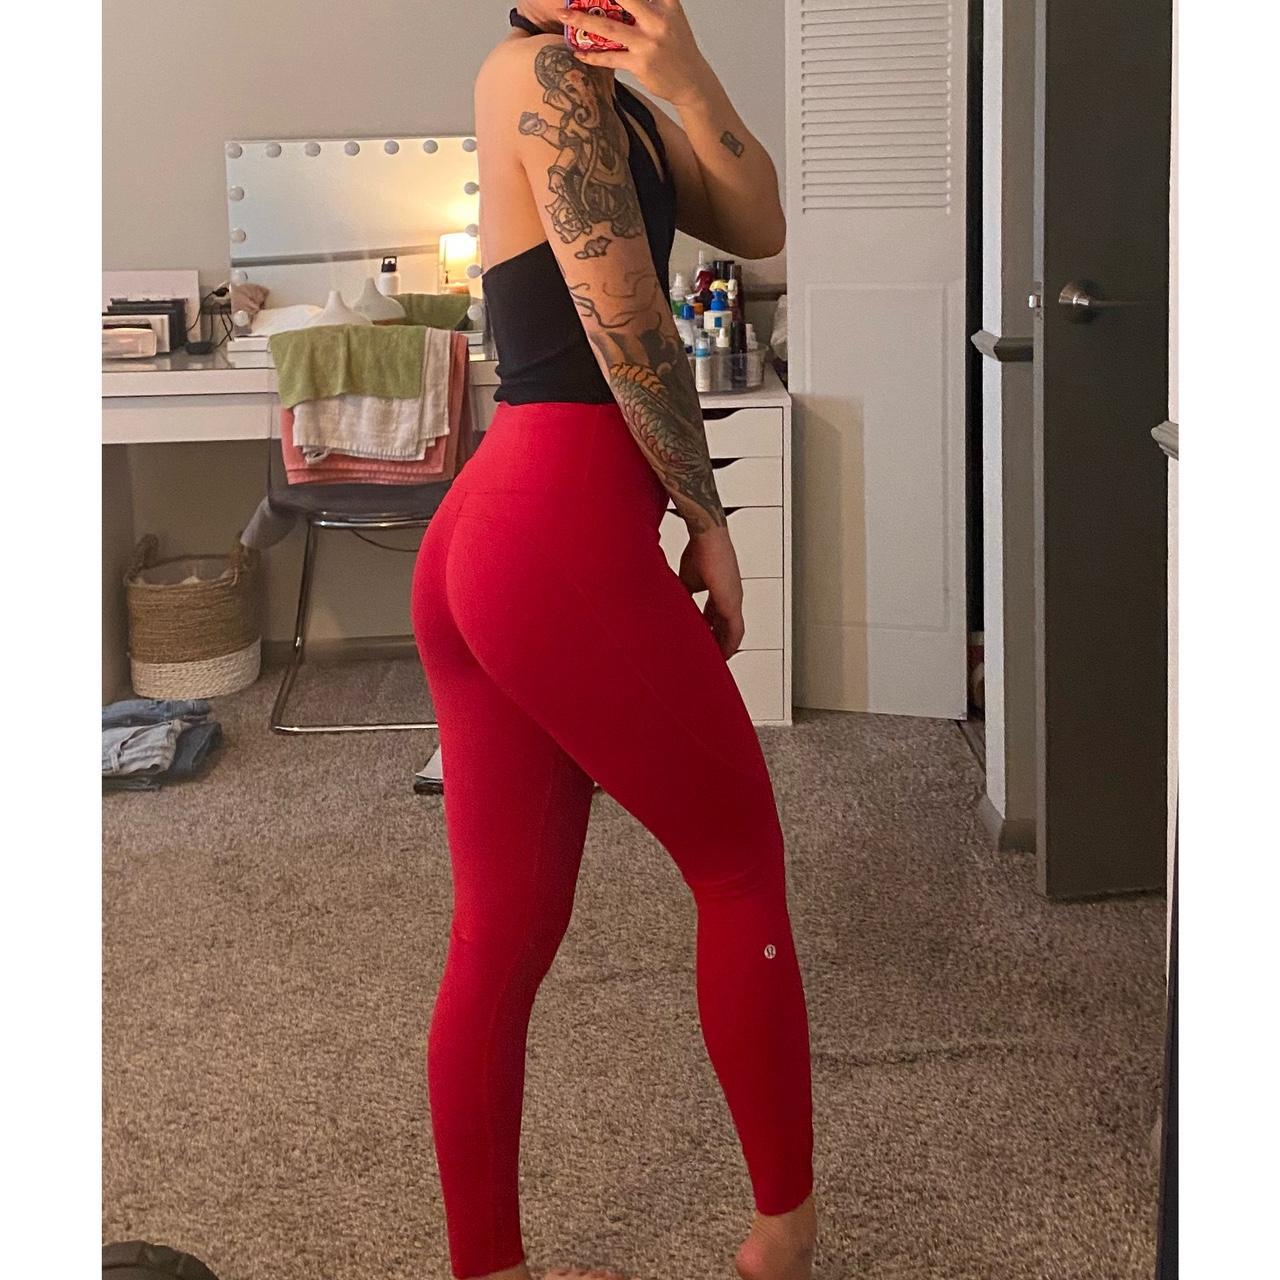 Red Lululemon leggings in size 4! I honestly don’t